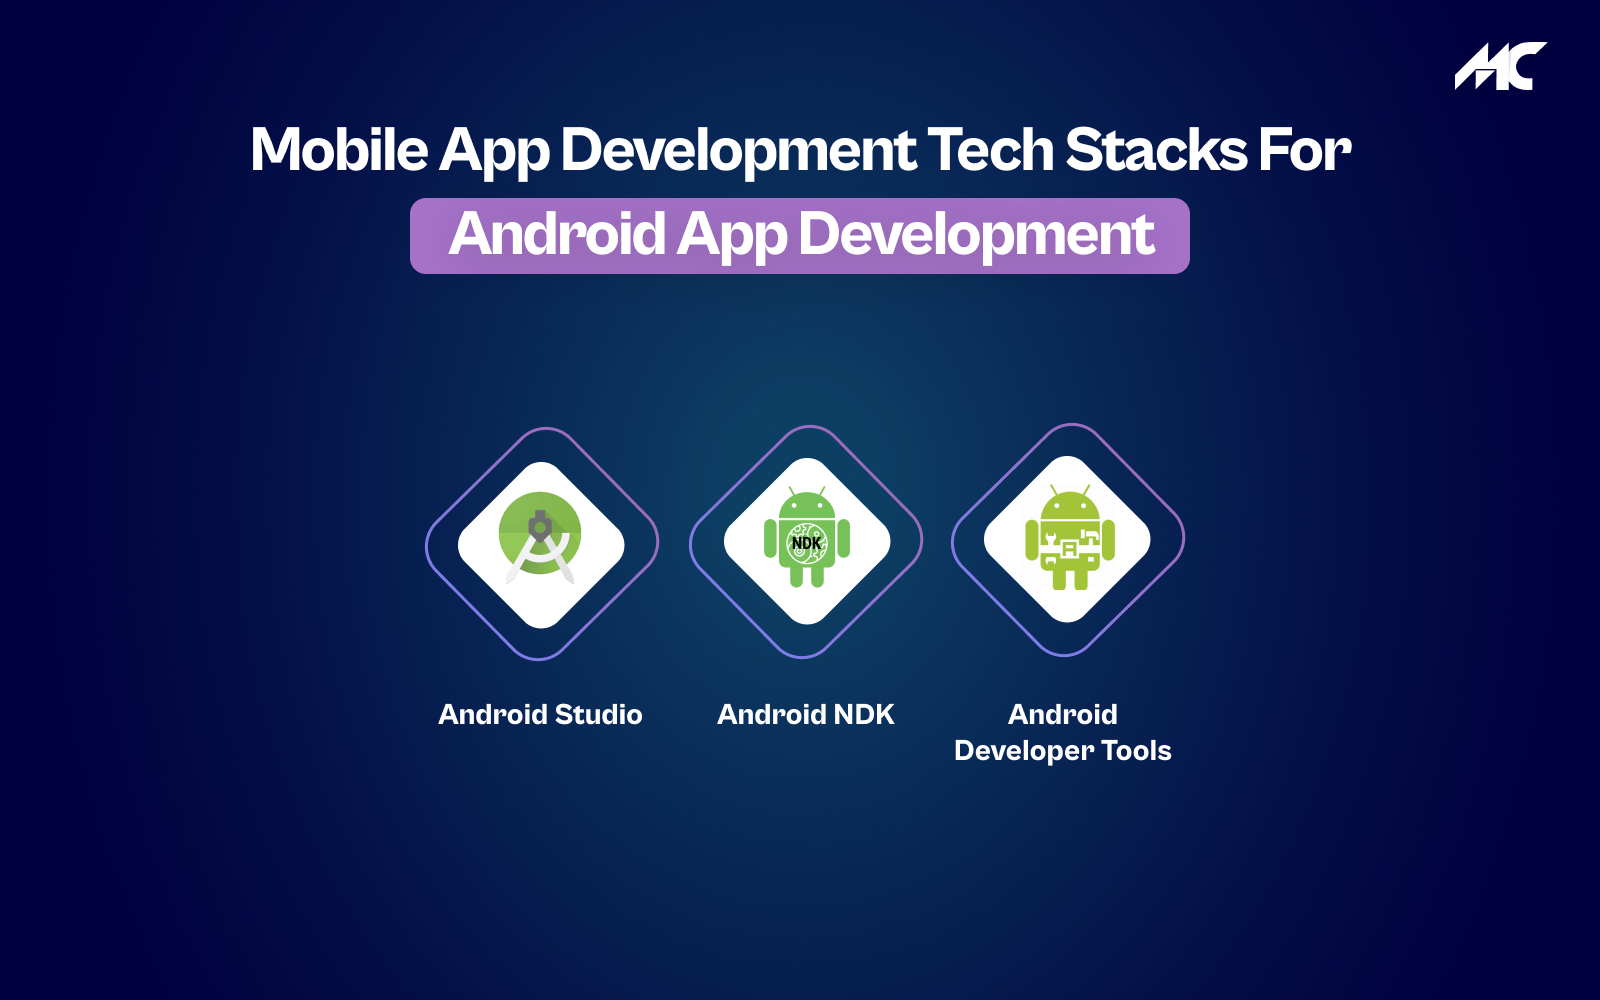 Mobile App Development Tech stacks for Android App Development